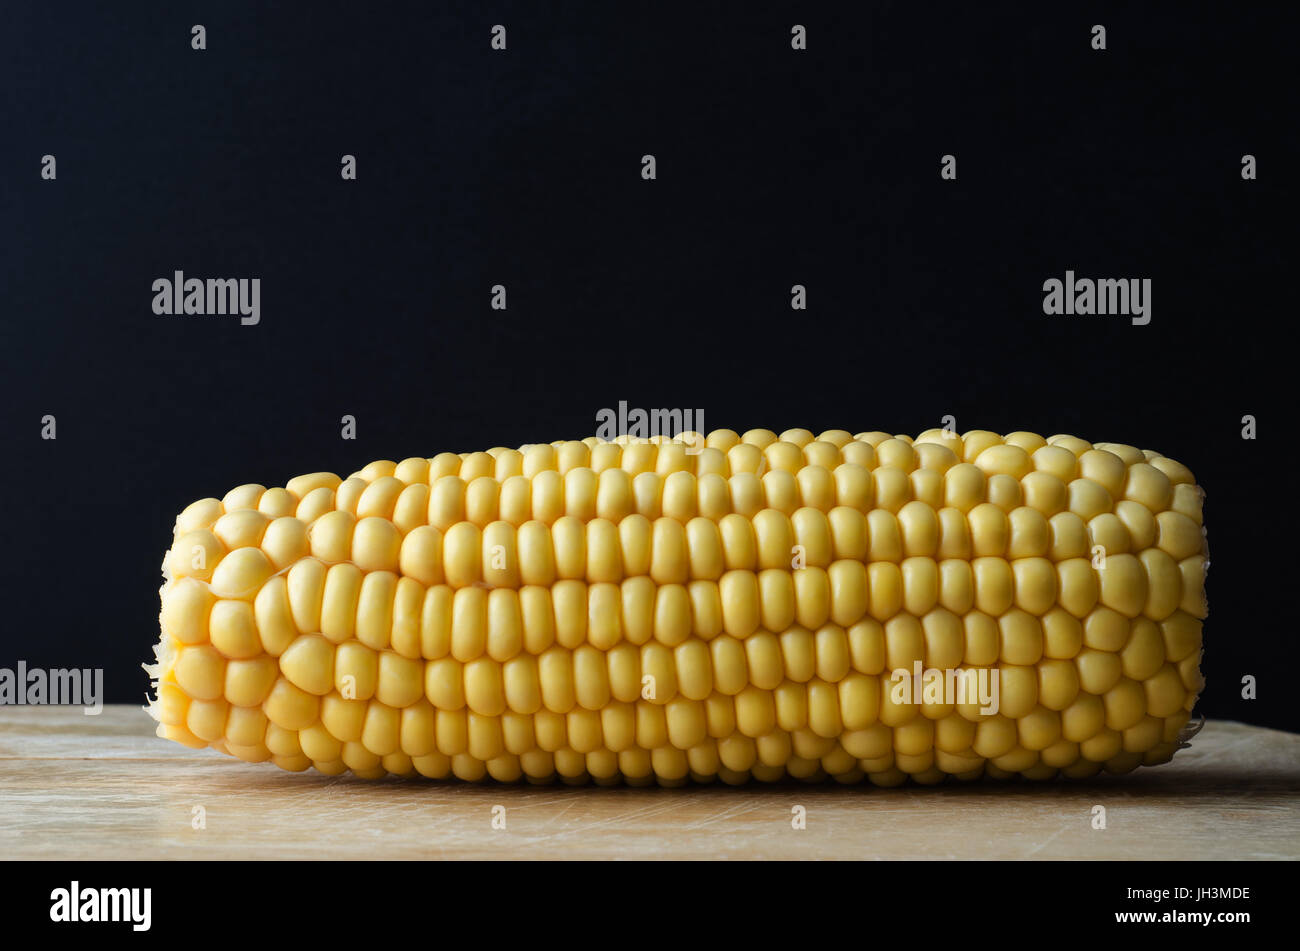 Ein Mais Maiskolben auf hölzernen Schneidebrett Hintergrund schwarze Tafel mit textfreiraum oben. Stockfoto